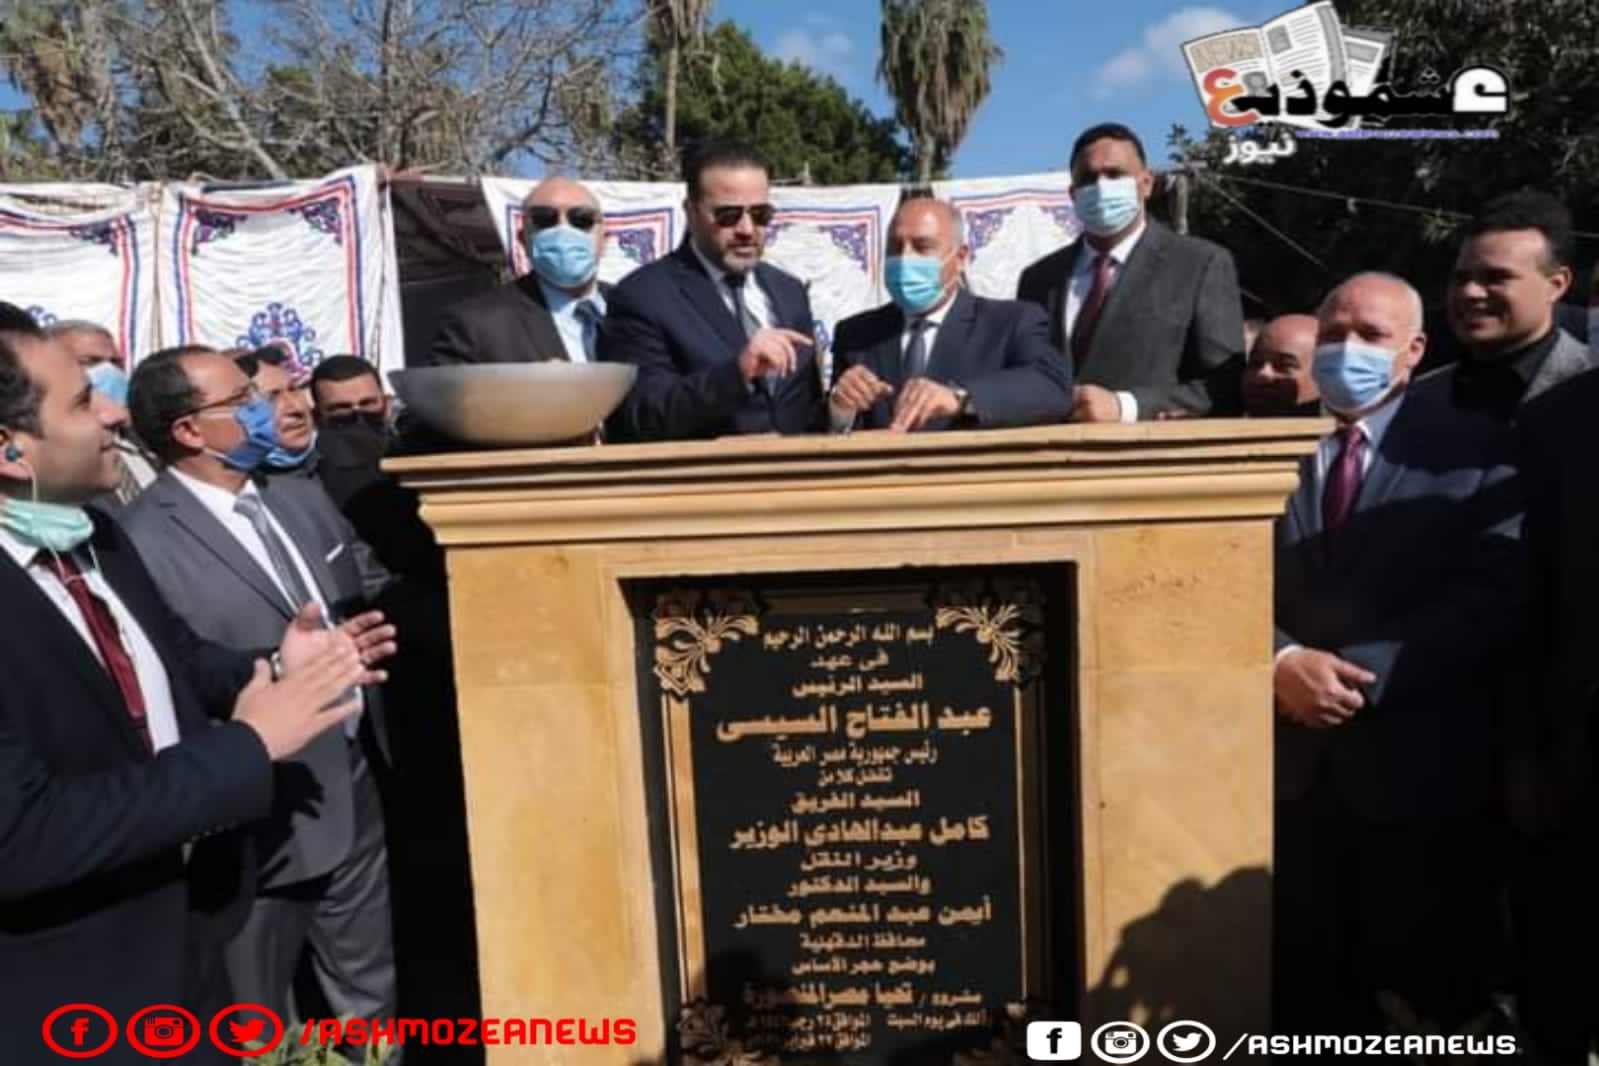 الوزير يضع حجر الأساس لمشروع "تحيا مصر المنصورة"